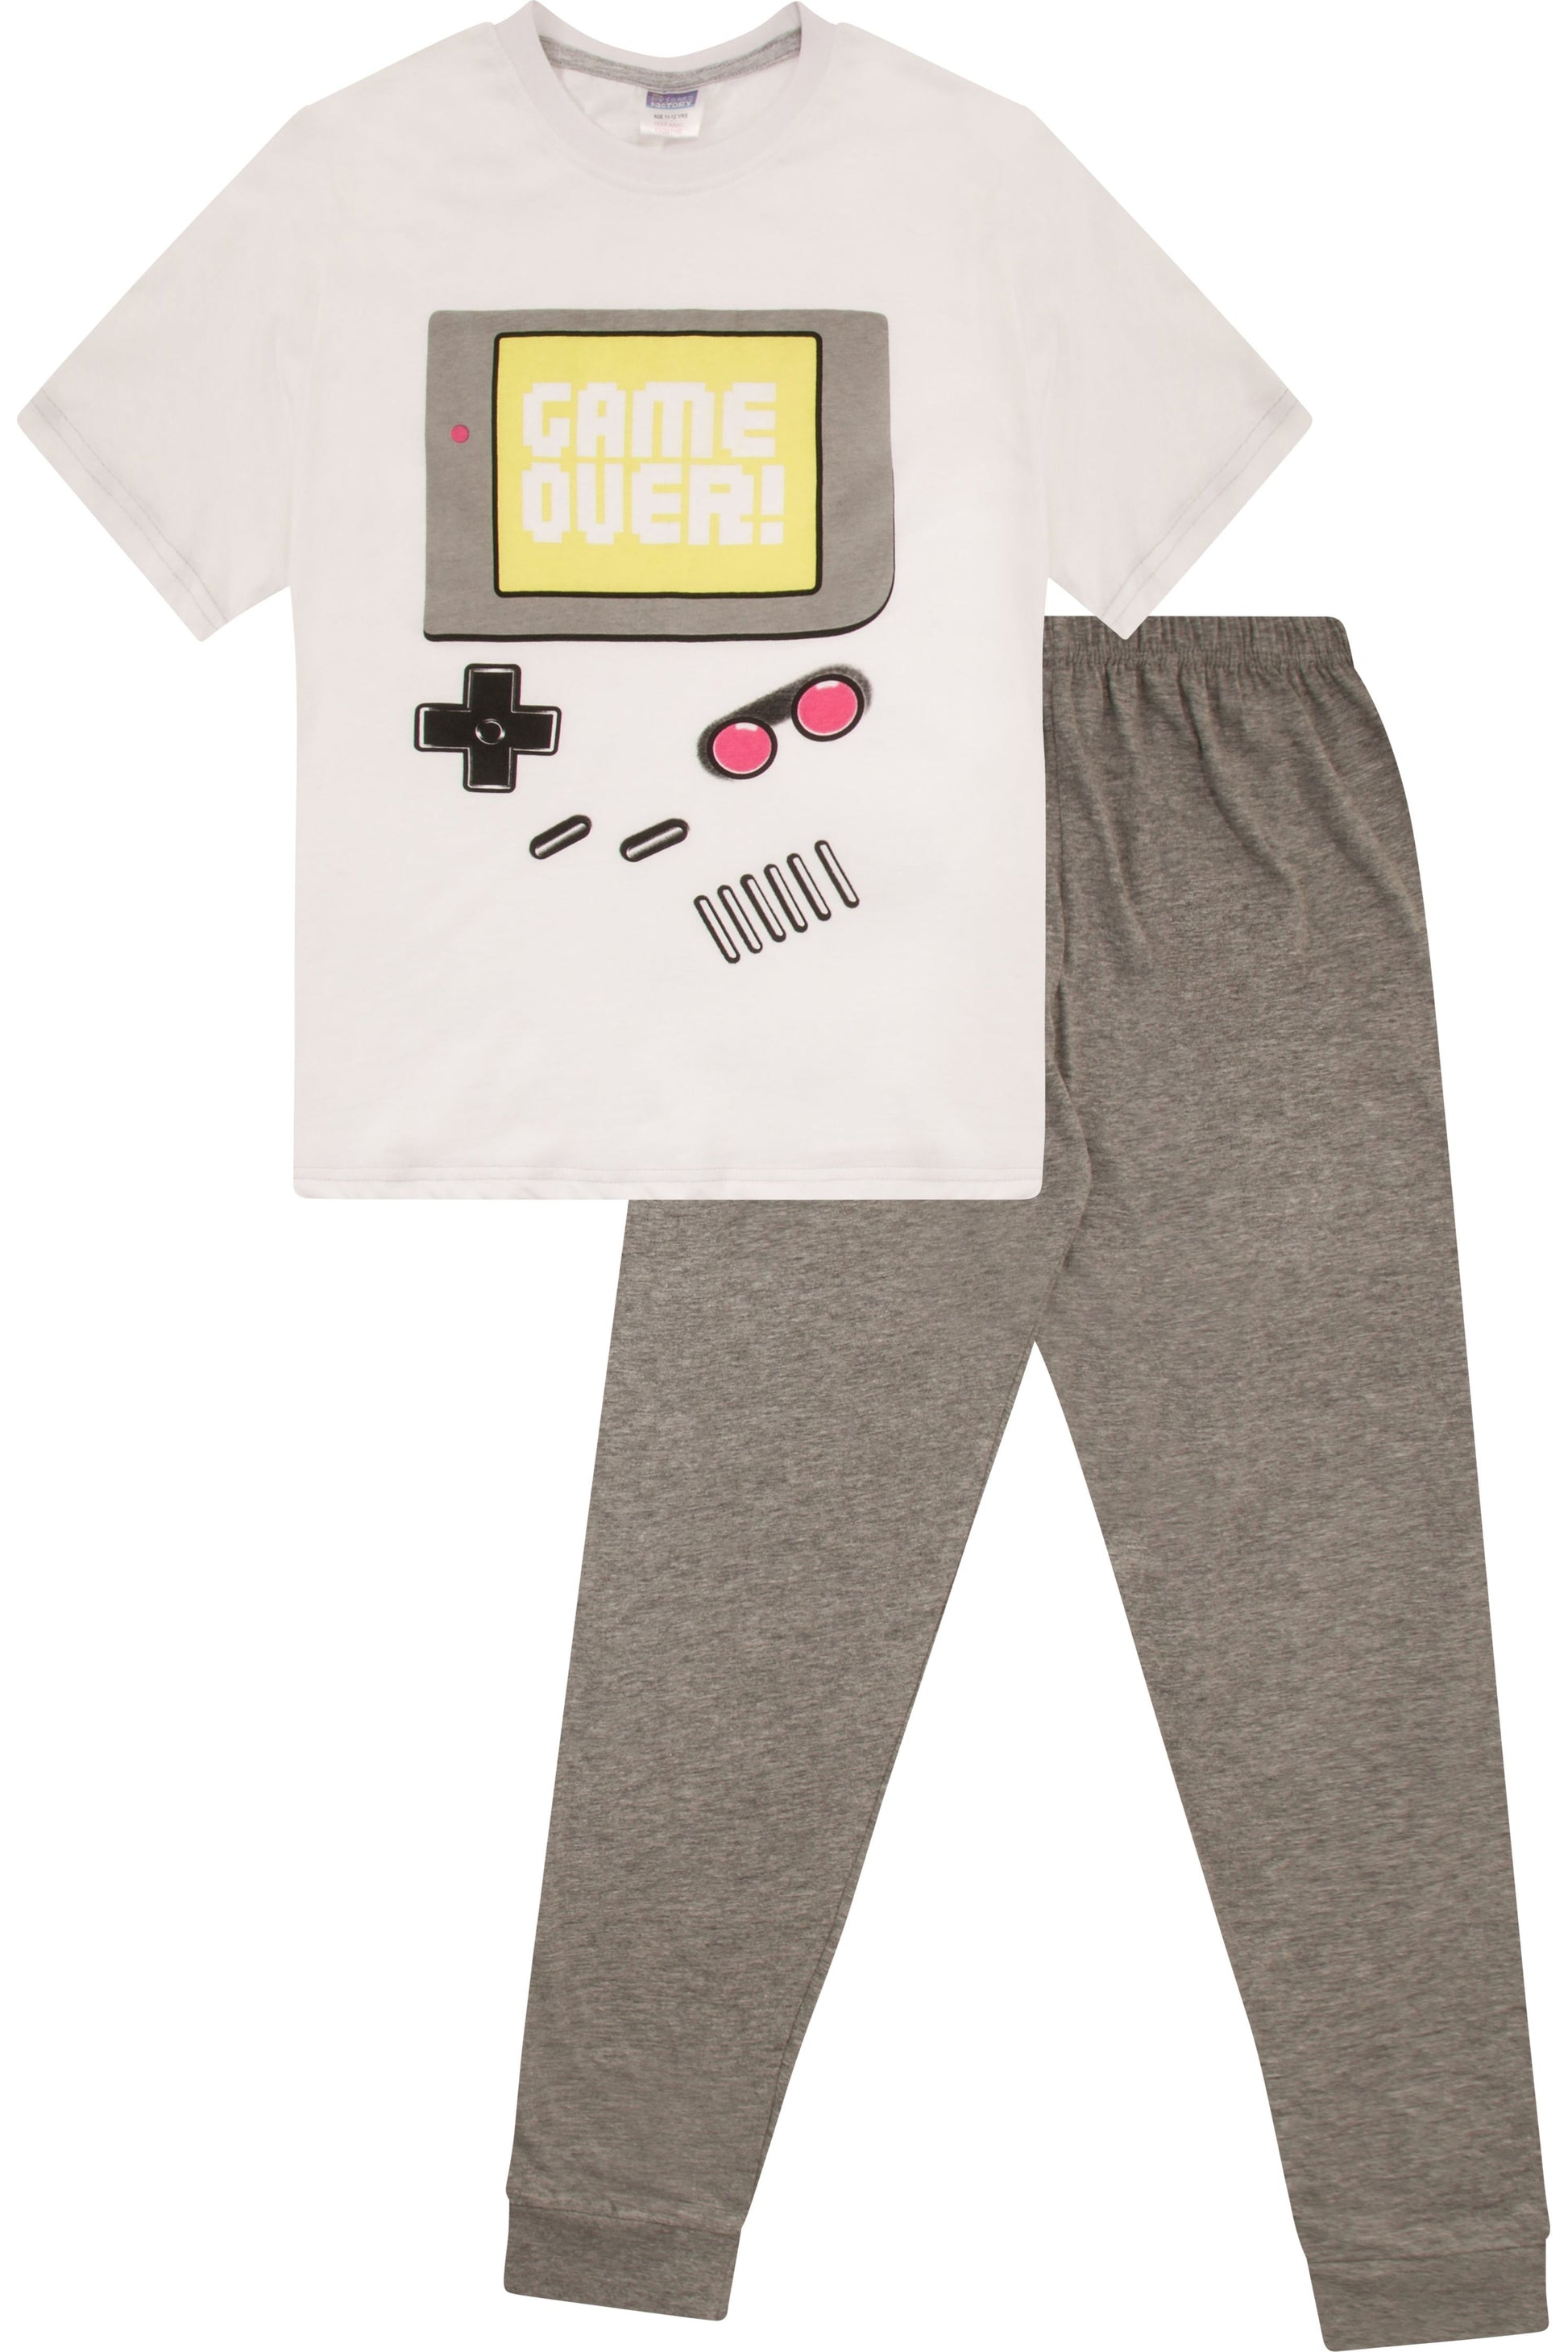 Boys Retro Gaming Long Pyjamas - Pyjamas.com